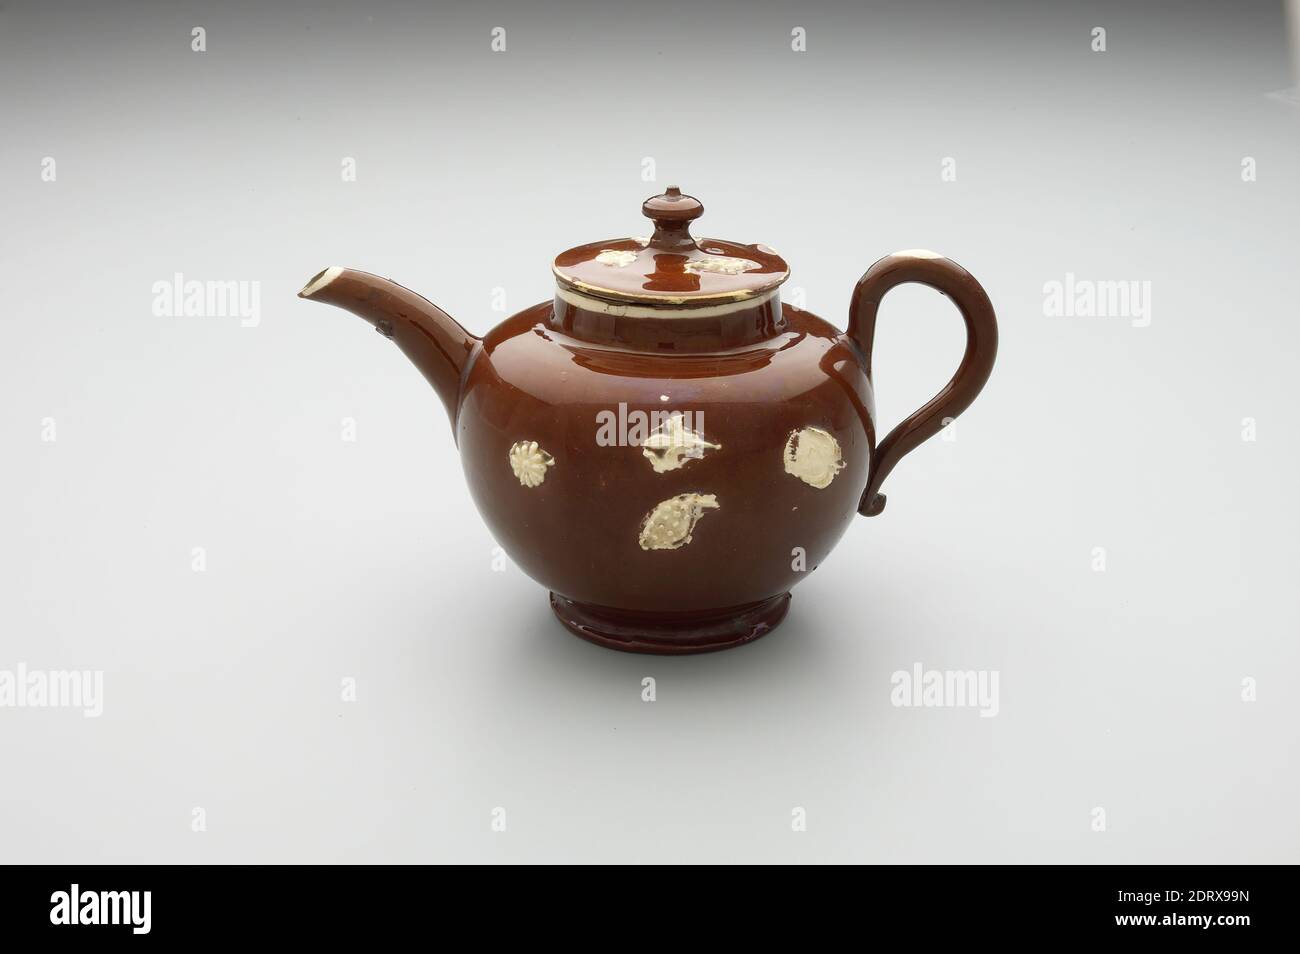 Théière, vaisselle rouge avec glaçure brune, 3 5/8 po (9.2 cm), fabriqué à Staffordshire, Angleterre, Grande-Bretagne, 18e siècle, conteneurs - céramique Banque D'Images